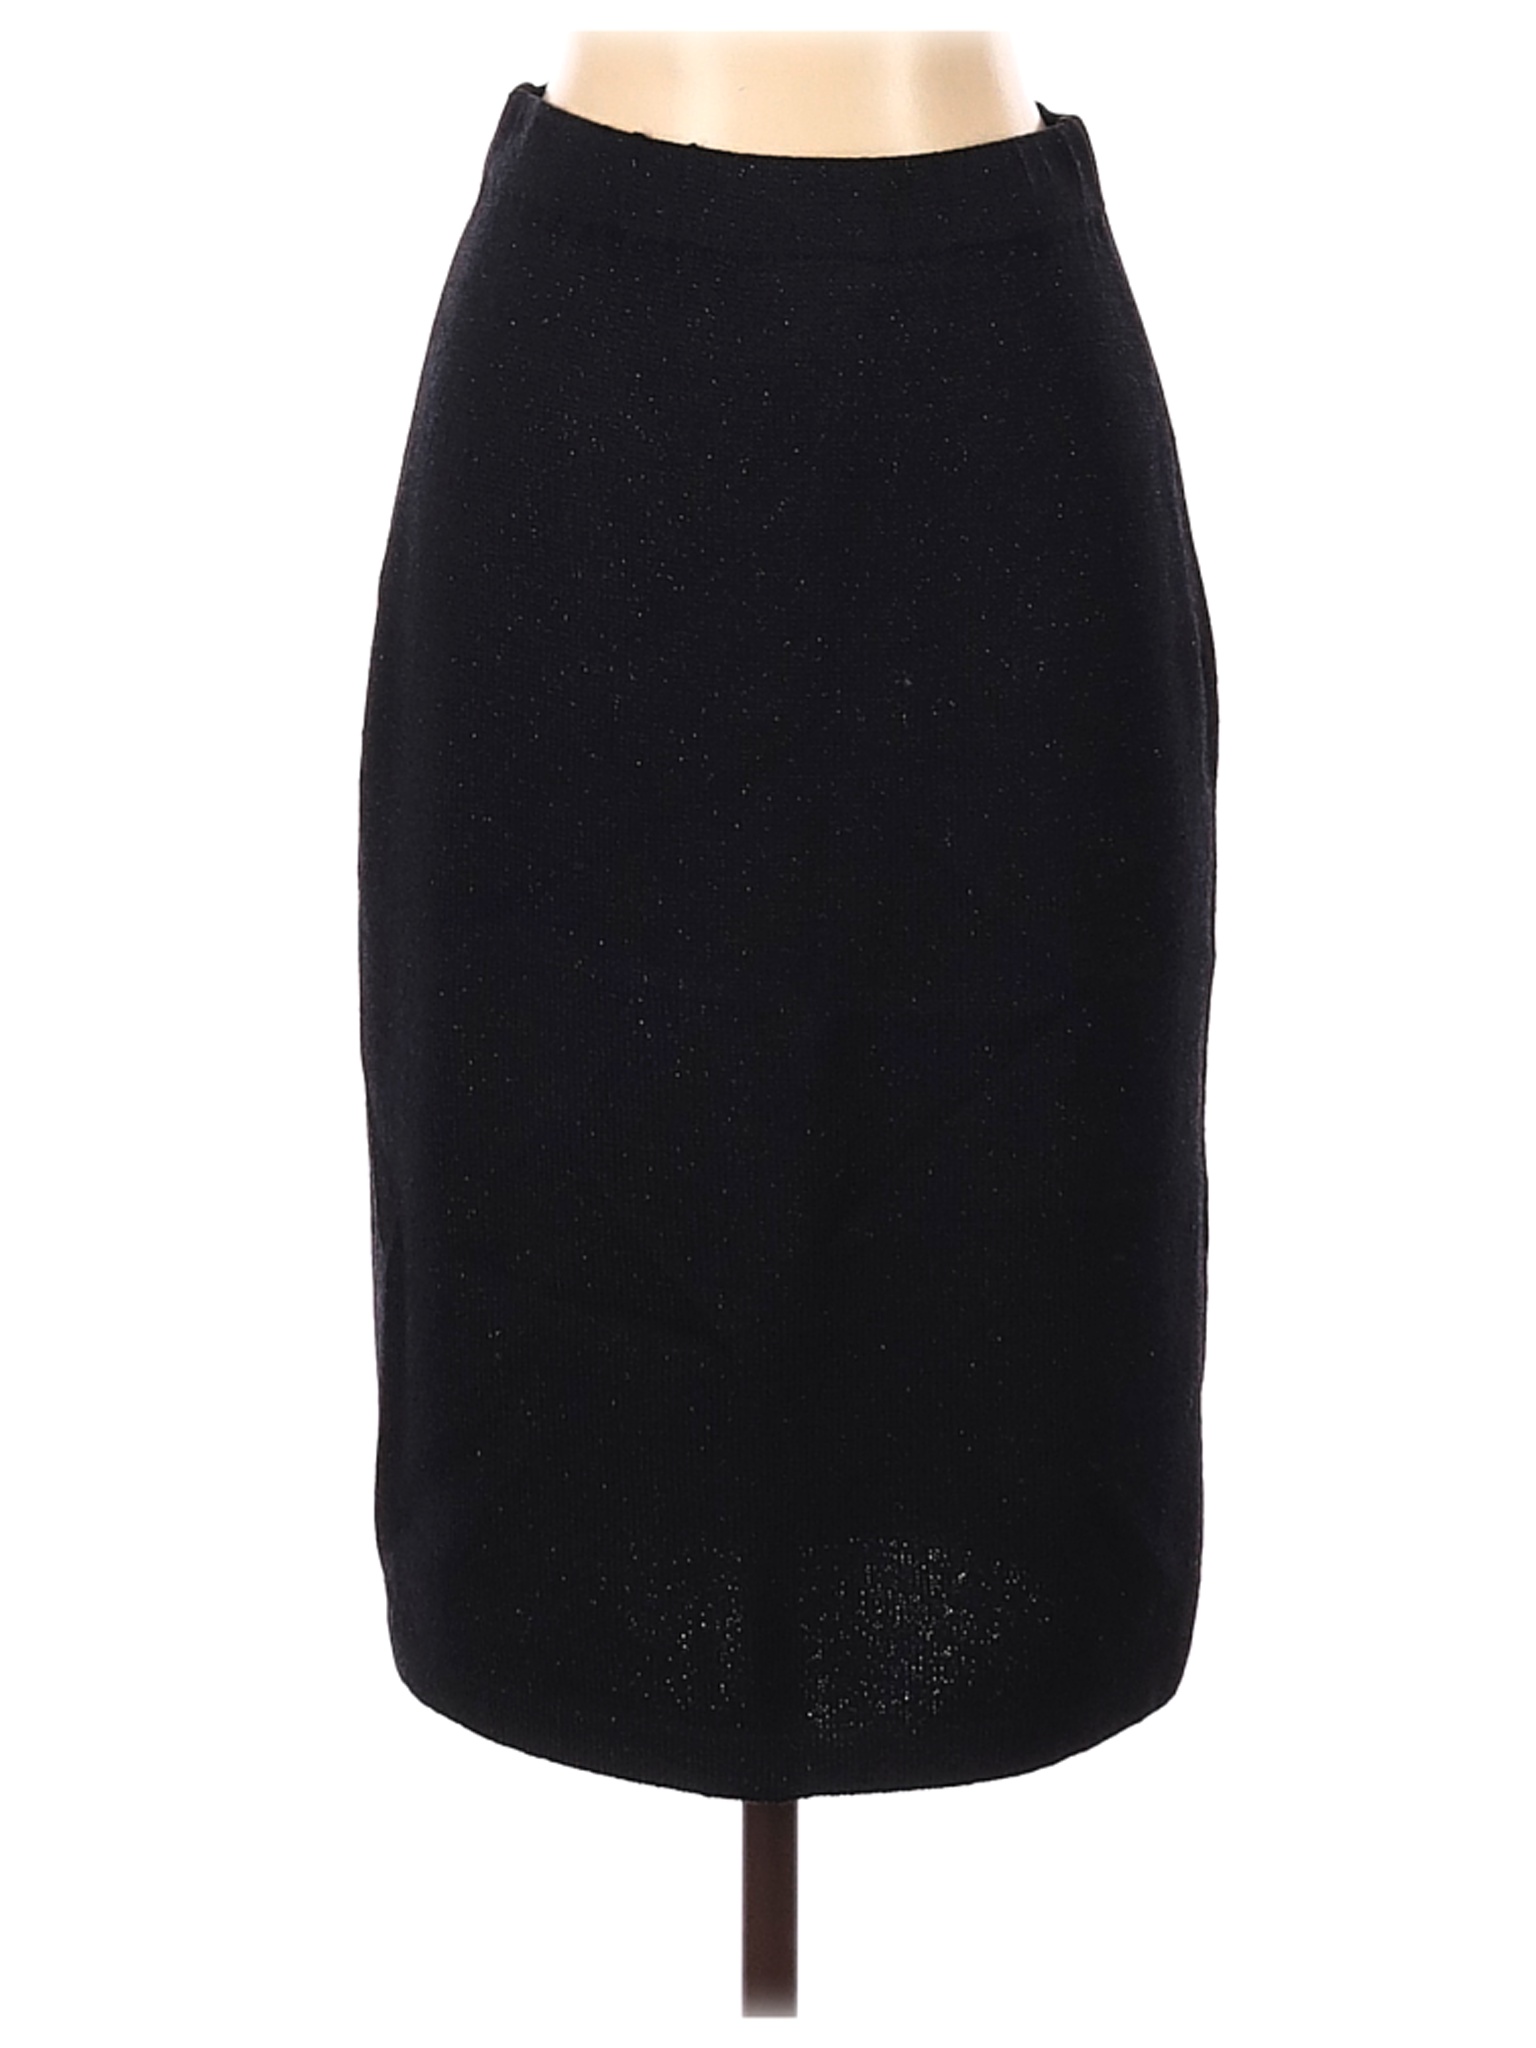 St. John Women Black Casual Skirt 2 | eBay